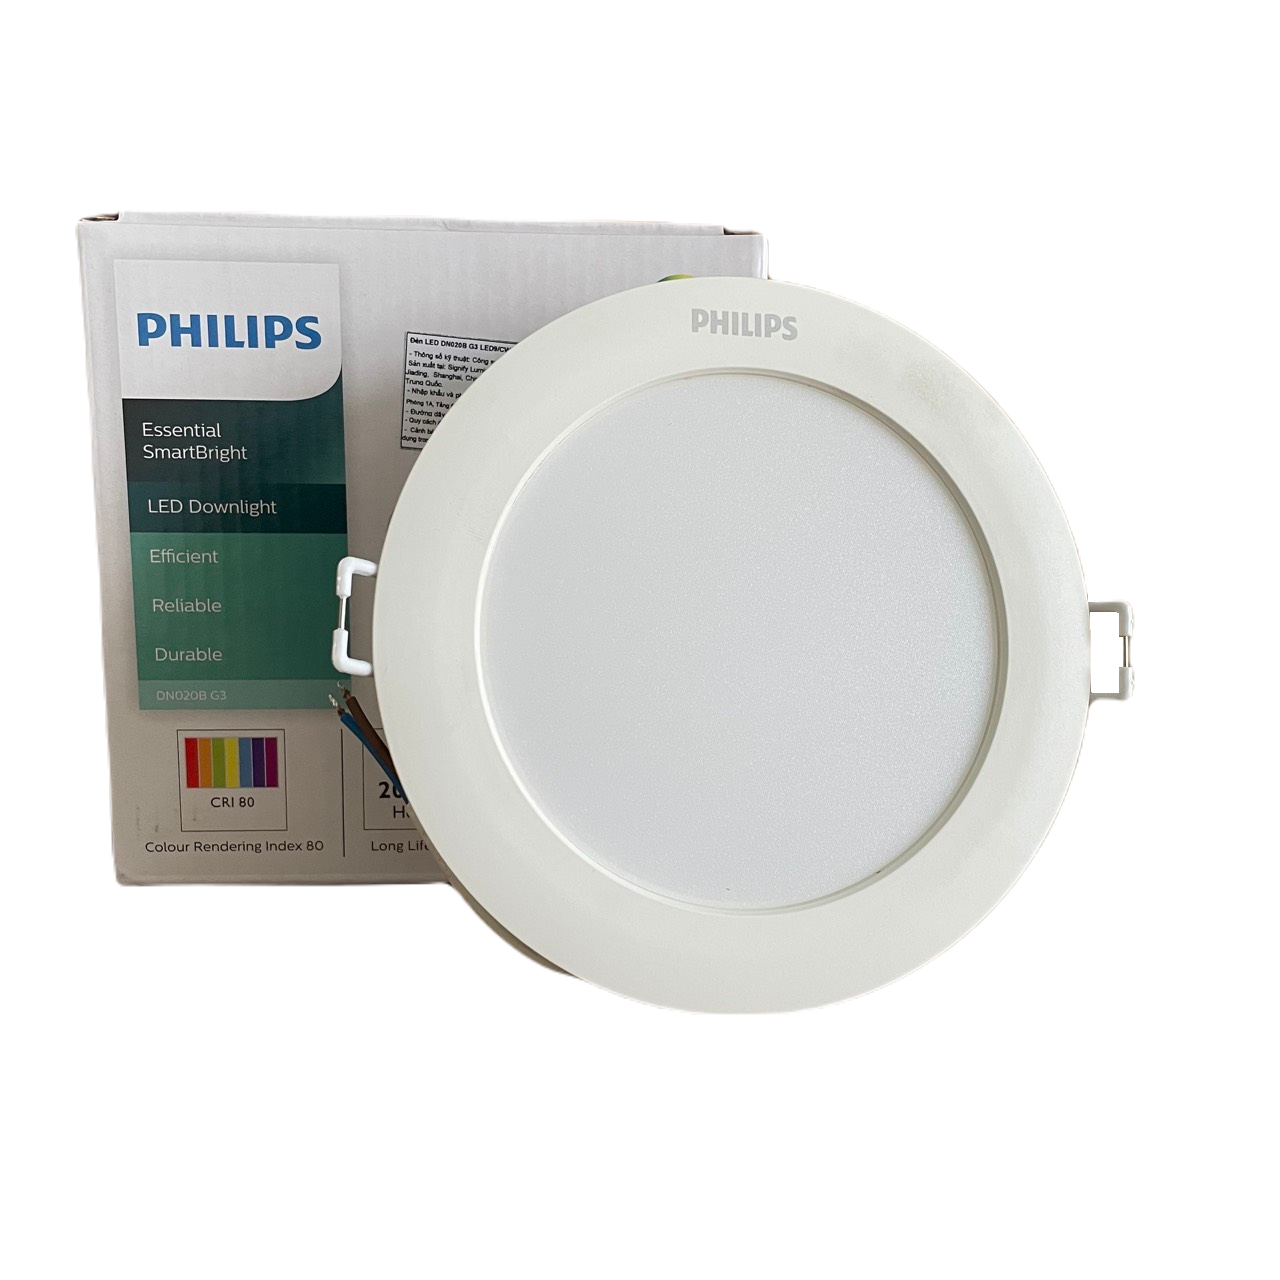 Đèn downlight âm trần LED Philips Essential SmartBright DN020B G3 LED12/WW 14W 220-240V D150 GM